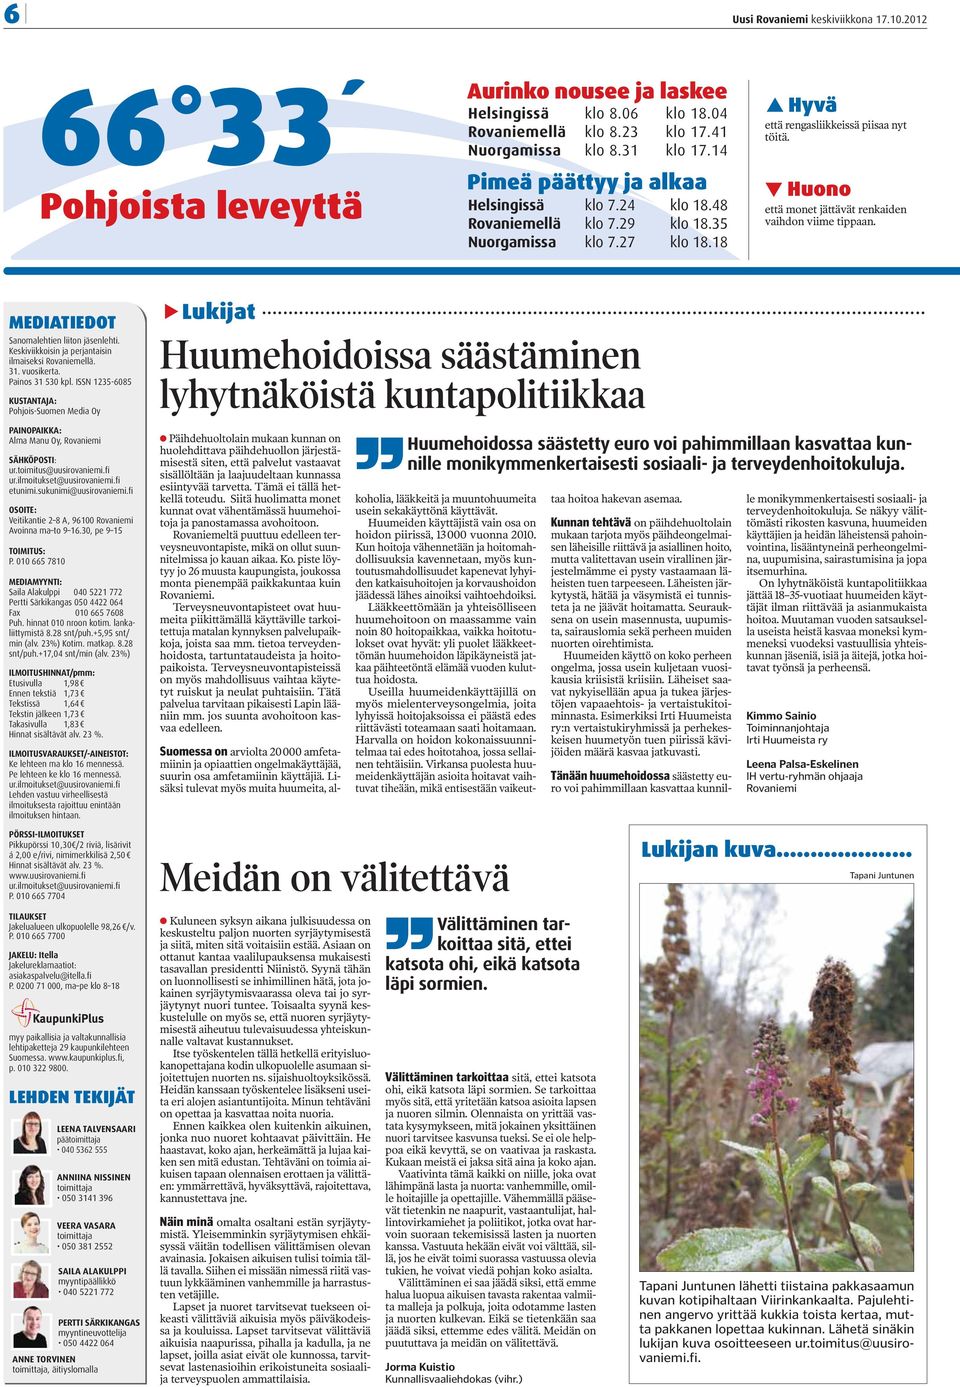 MEDIATIEDOT Sanomalehtien liiton jäsenlehti. Keskiviikkoisin ja perjantaisin ilmaiseksi Rovaniemellä. 31. vuosikerta. Painos 31 530 kpl.